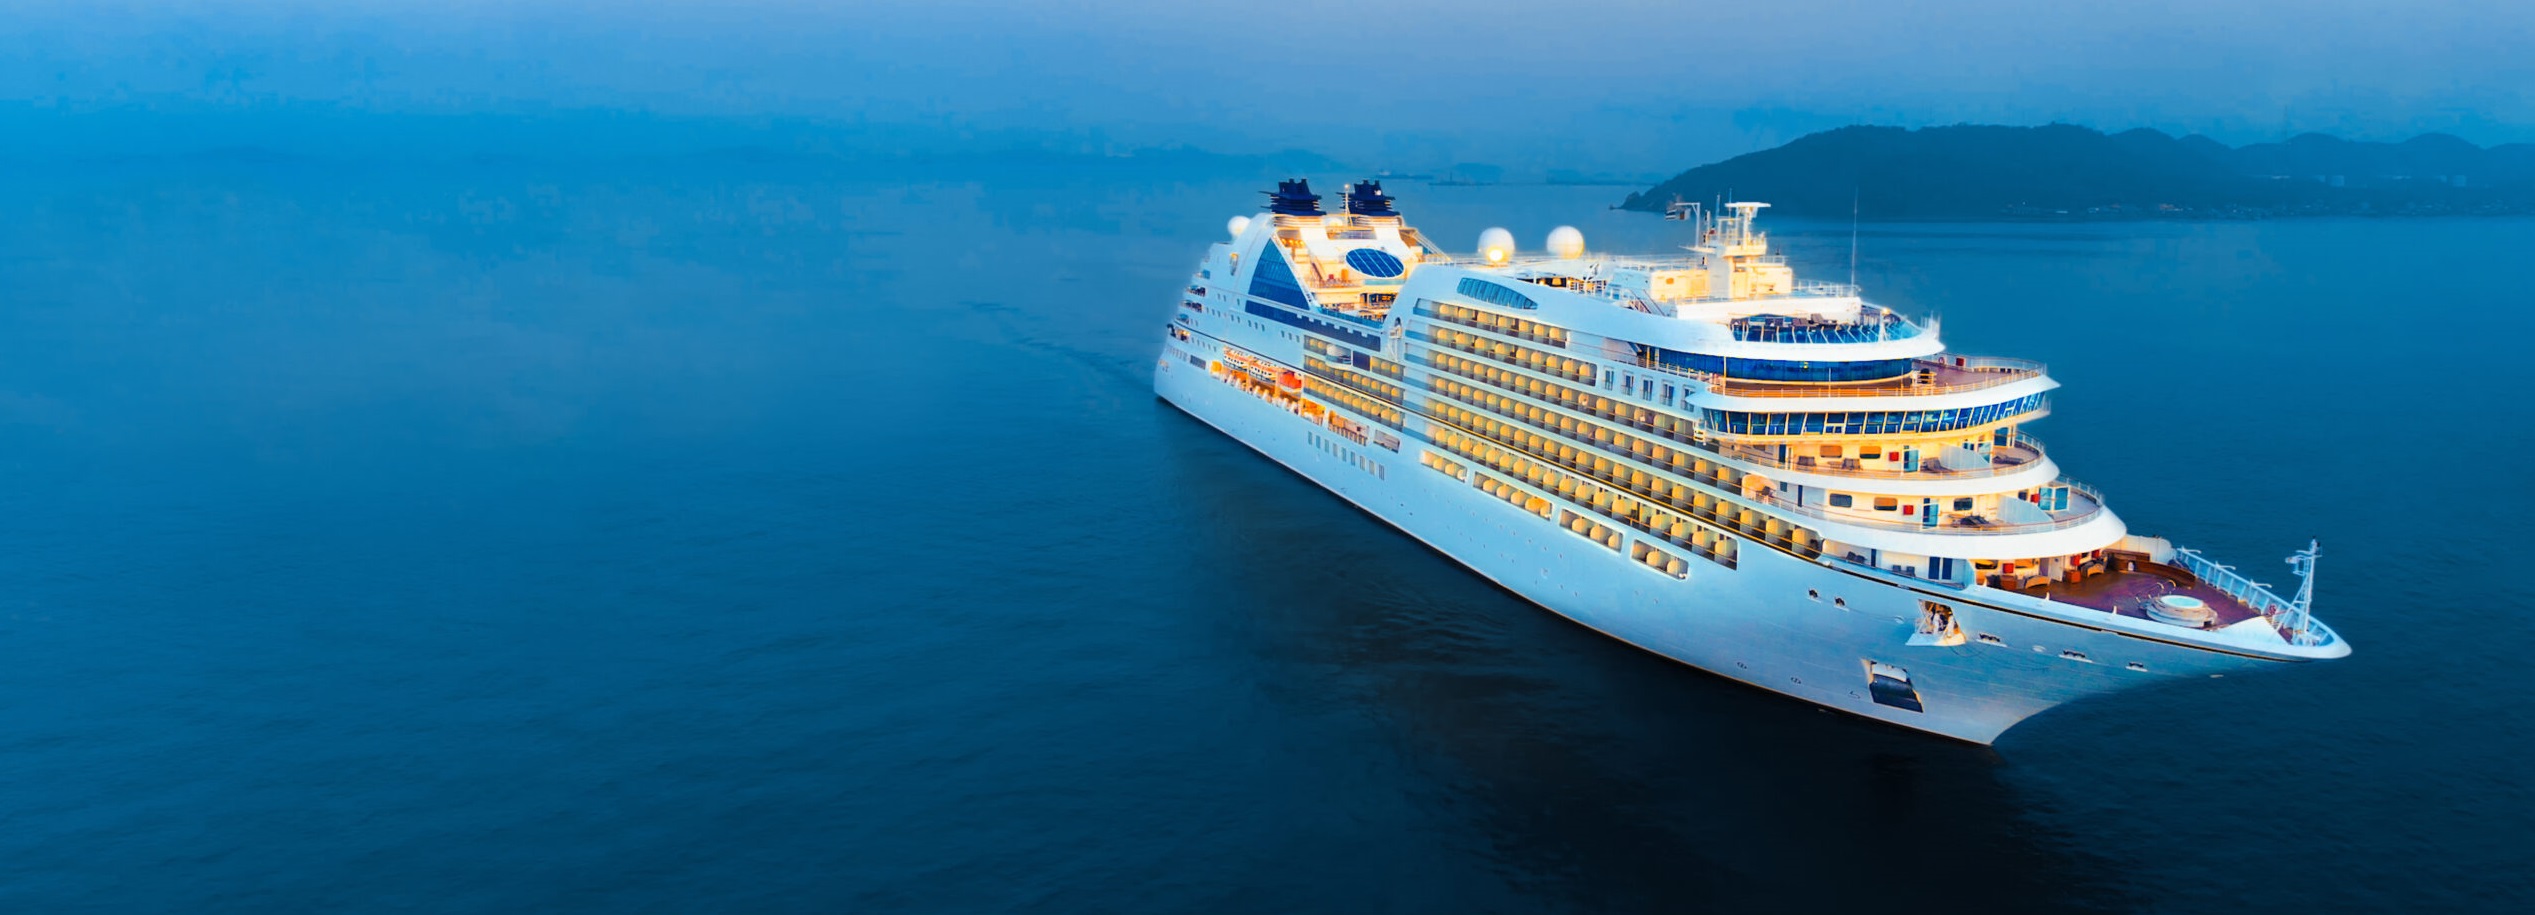 cruise ship tourism course